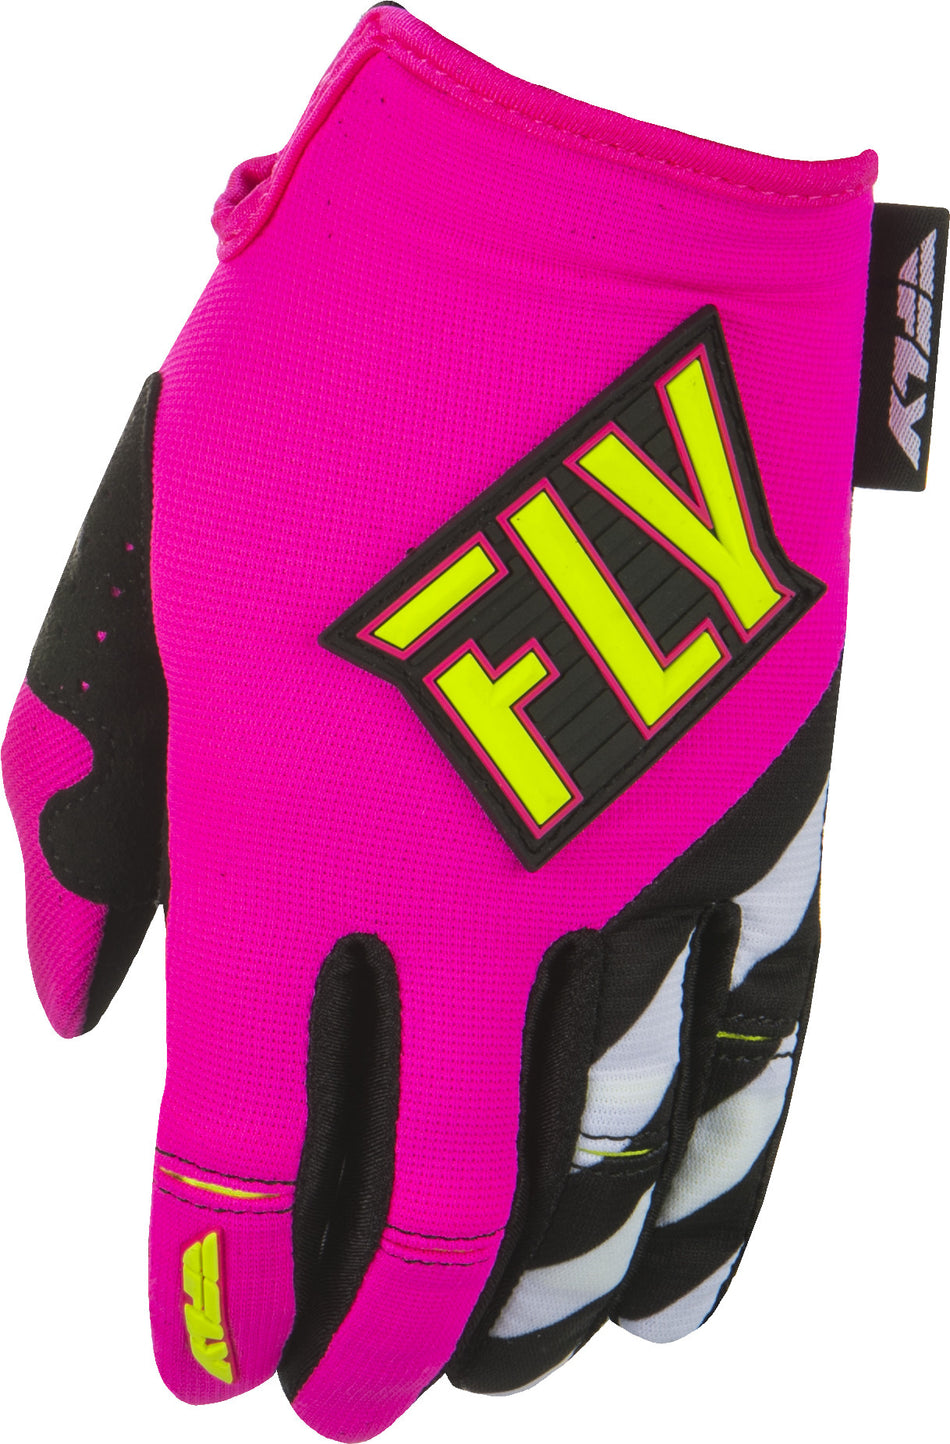 FLY RACING Kinetic Women's Gloves Neon Pink/Hi-Vis Ym 371-61903